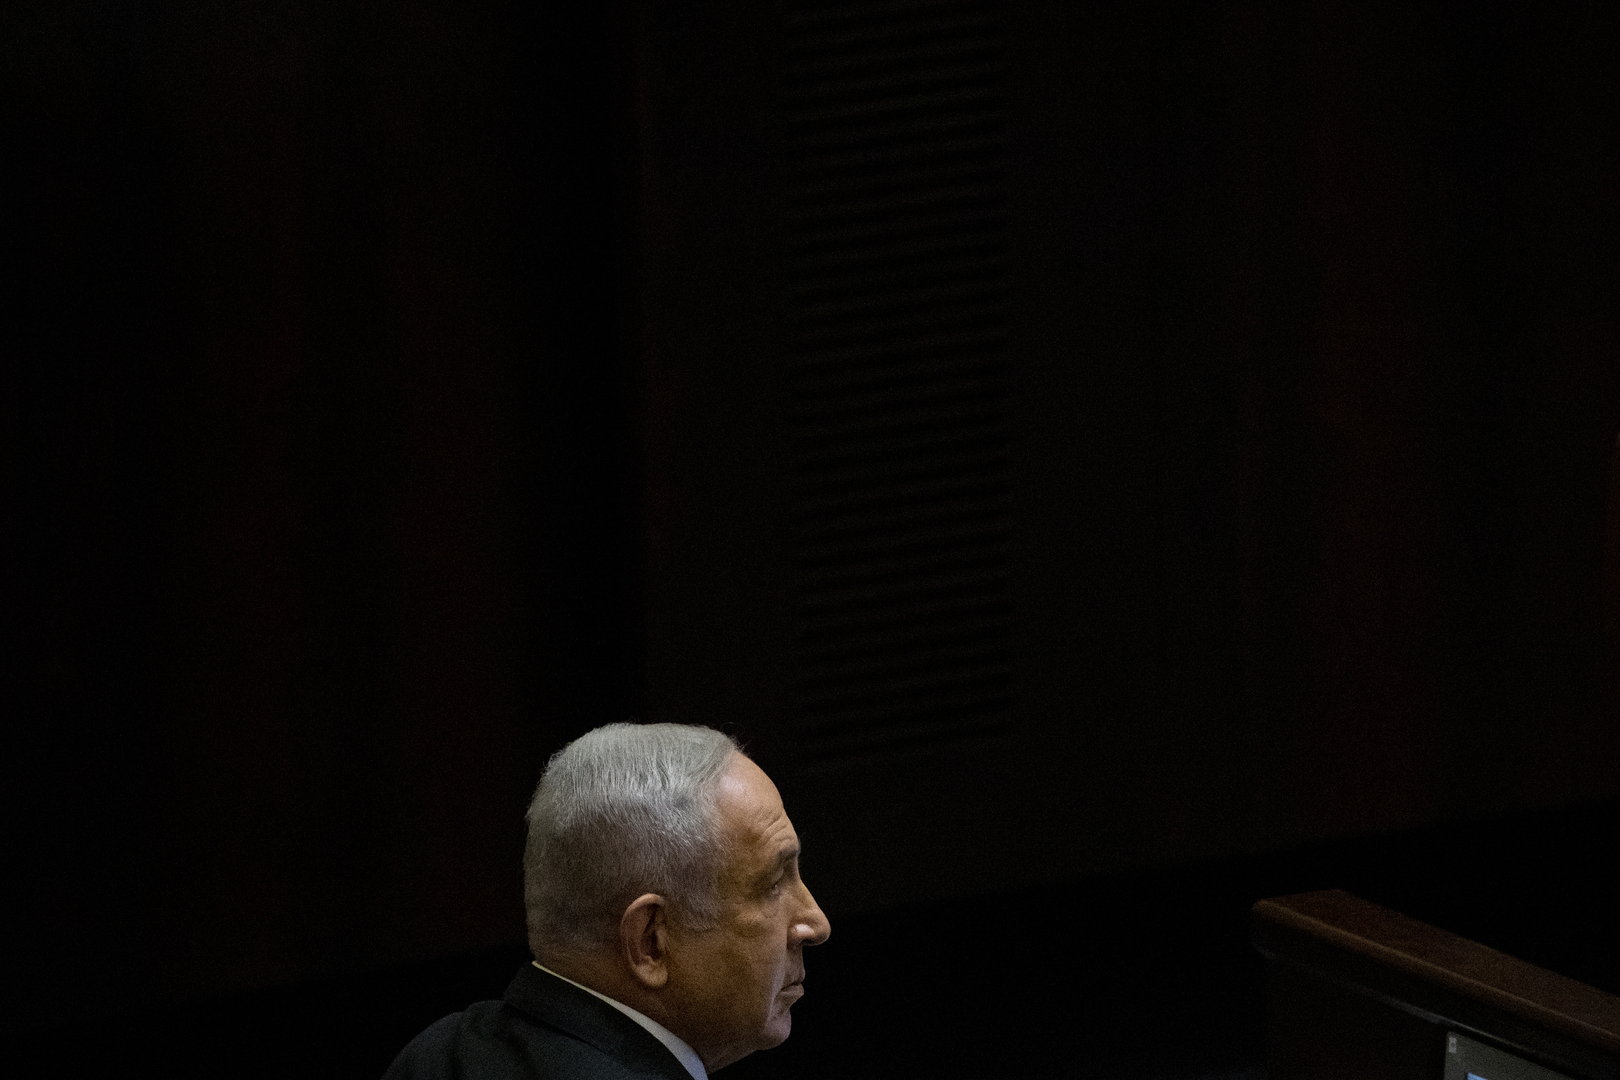 وسائل إعلام: الشرطة الإسرائيلية تجسست على شاهد رئيسي في محاكمة نتنياهو